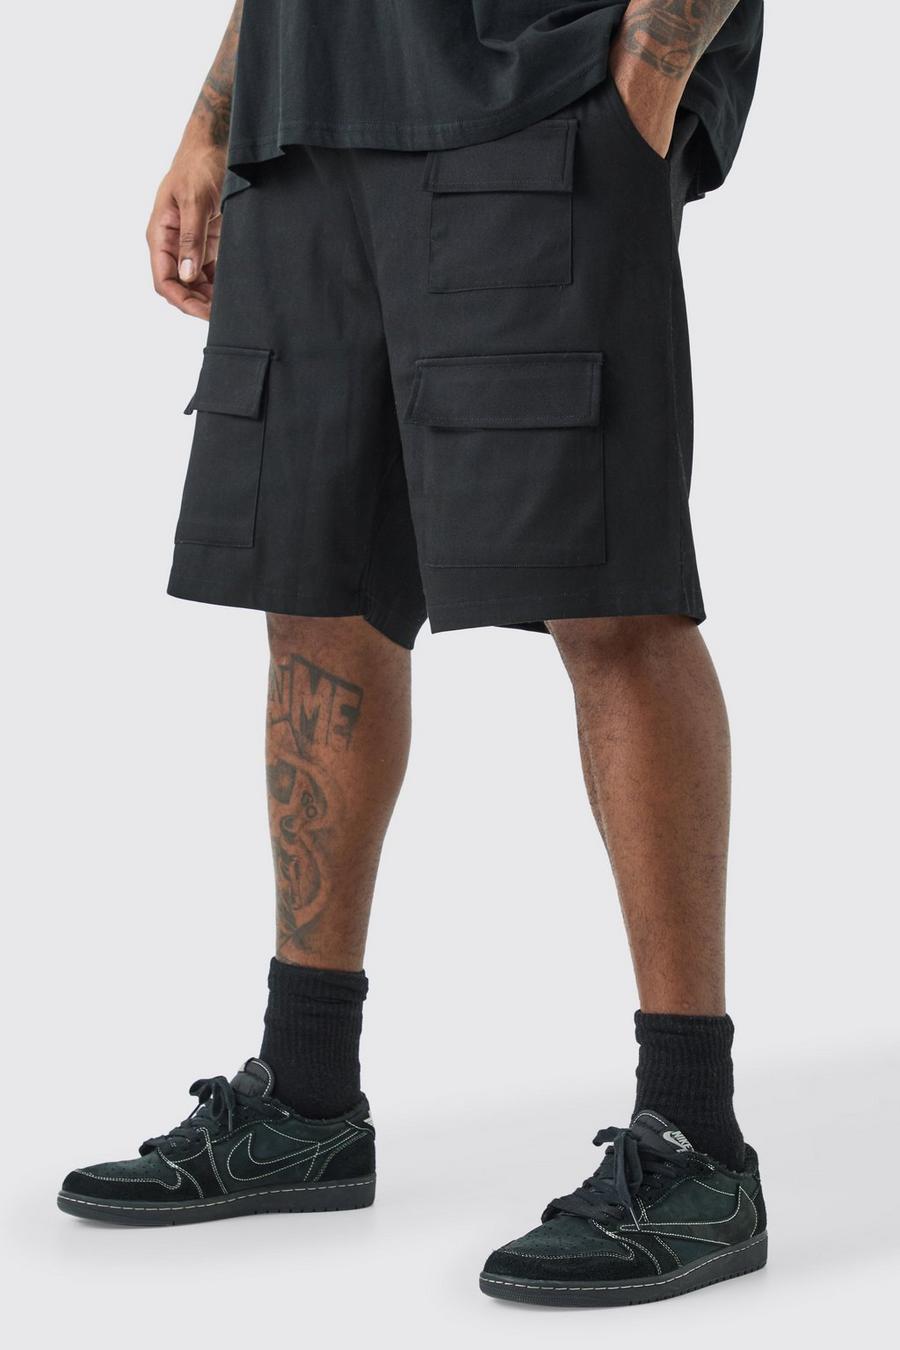 Pantaloncini Plus Size rilassati stile Utility con vita elasticizzata, Black